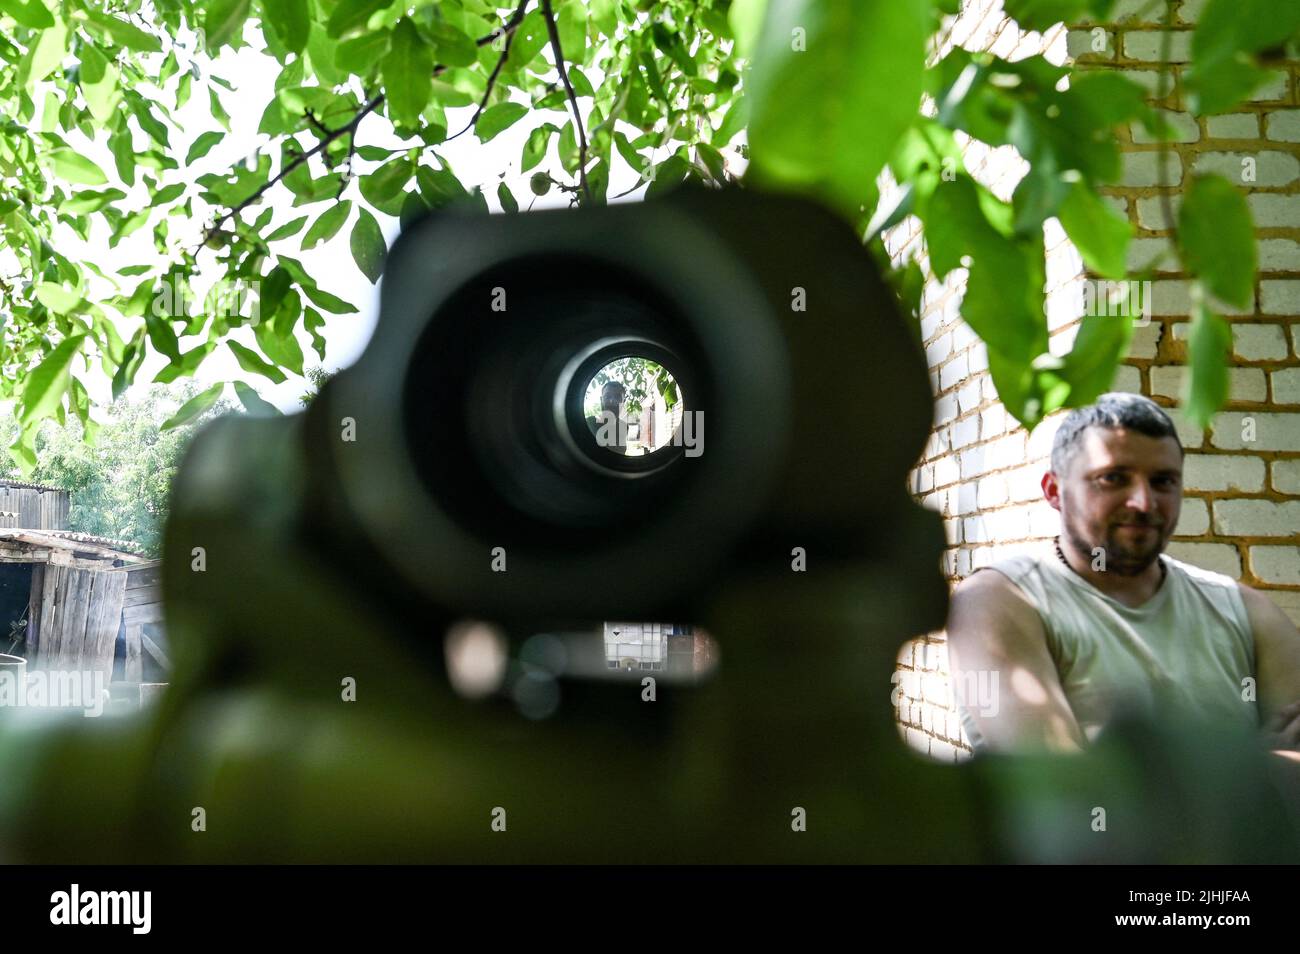 Un militaire d'une unité de mortier des Forces de défense territoriales ukrainiennes appelée la Légion hutsul est photographié dans la région de Zaporizhzhhia, dans le sud-est de l'Ukraine, au 29 juin 2022. Photo de Dmytro Smolyenko/Ukrinform/ABACAPRESS.CCOM Banque D'Images